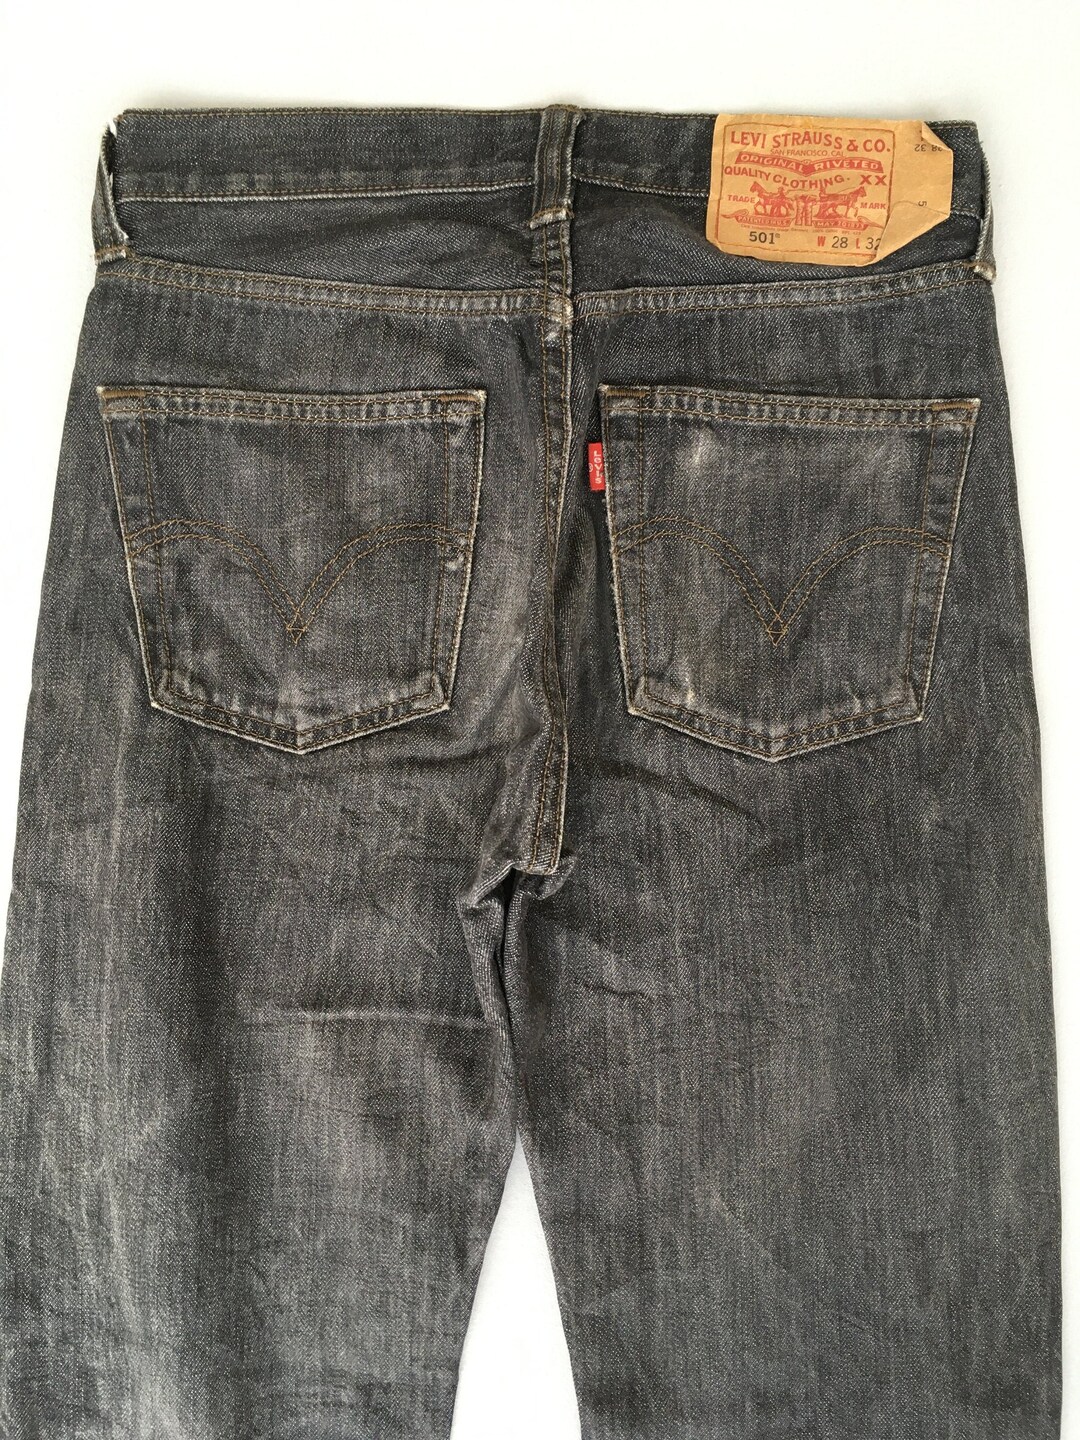 Size 27x29 Vintage Levis 501 Women's Black Jeans Levis - Etsy